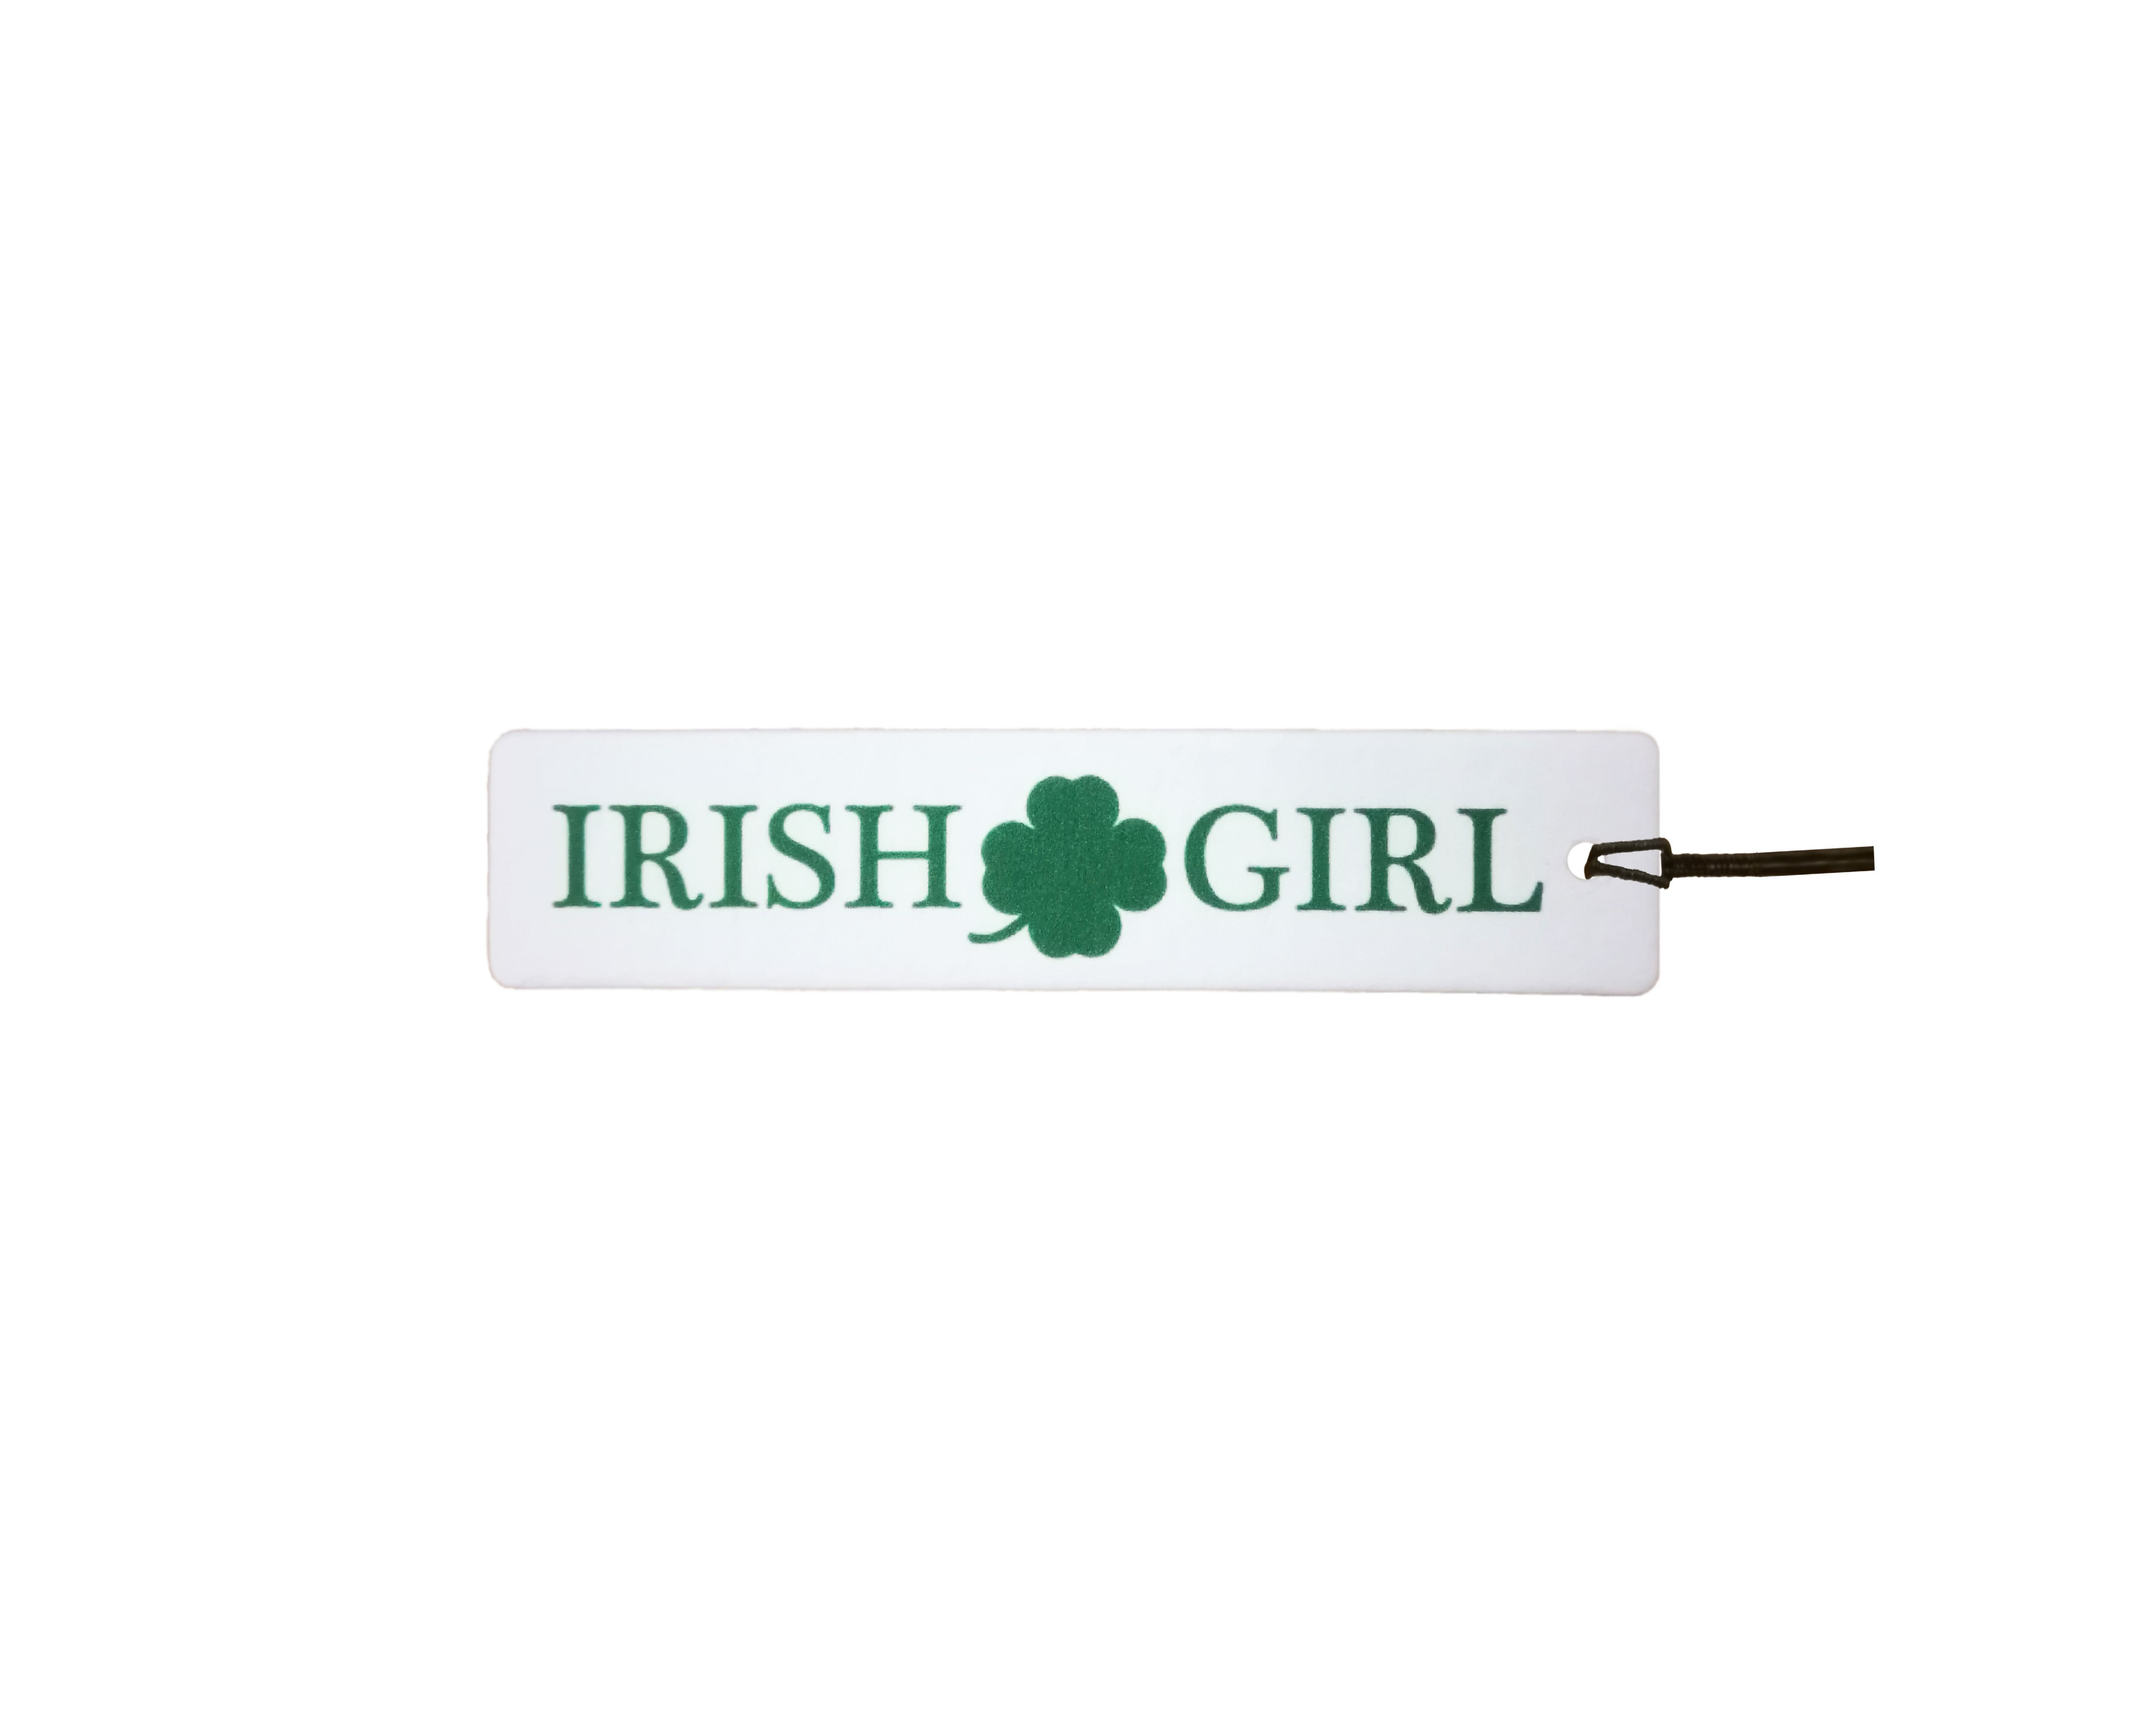 Irish Girl